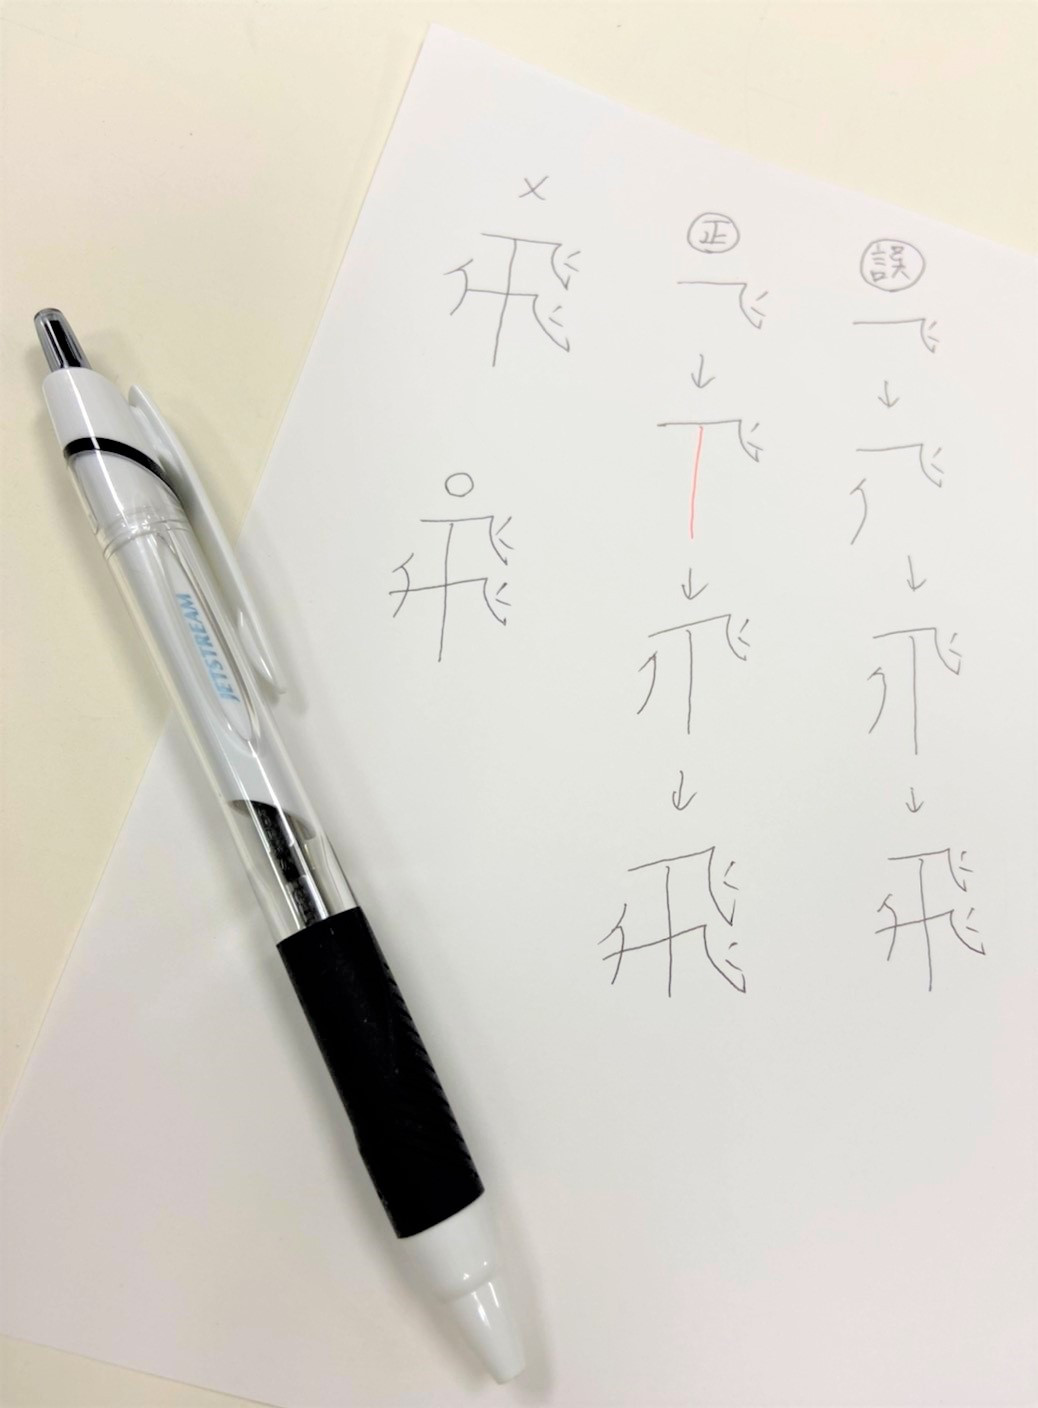 飛 の4画目って 筆順を考えてみる 大阪の書道教室 青霄書法会 せいしょうしょほうかい ブログはこちら